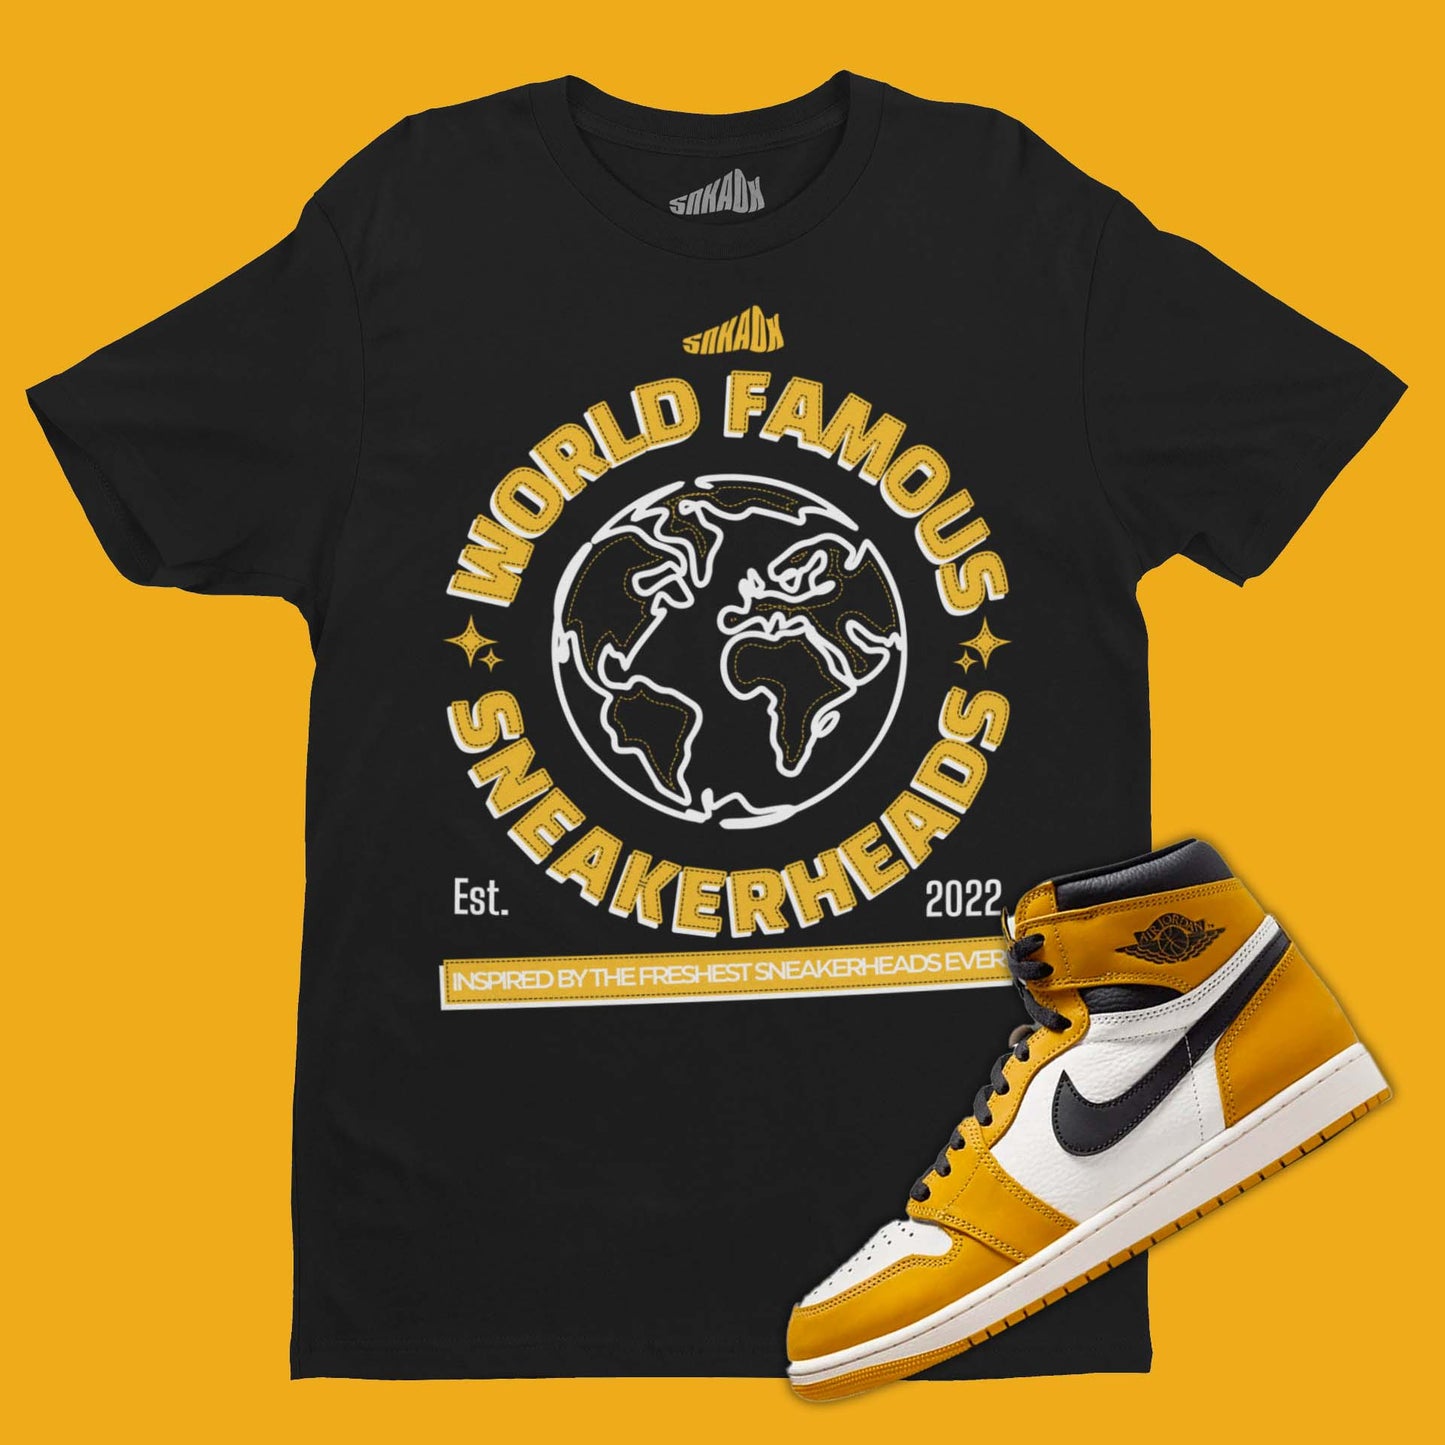 World Famous Sneakerheads T-Shirt Matching Air Jordan 1 High Yellow Ochre